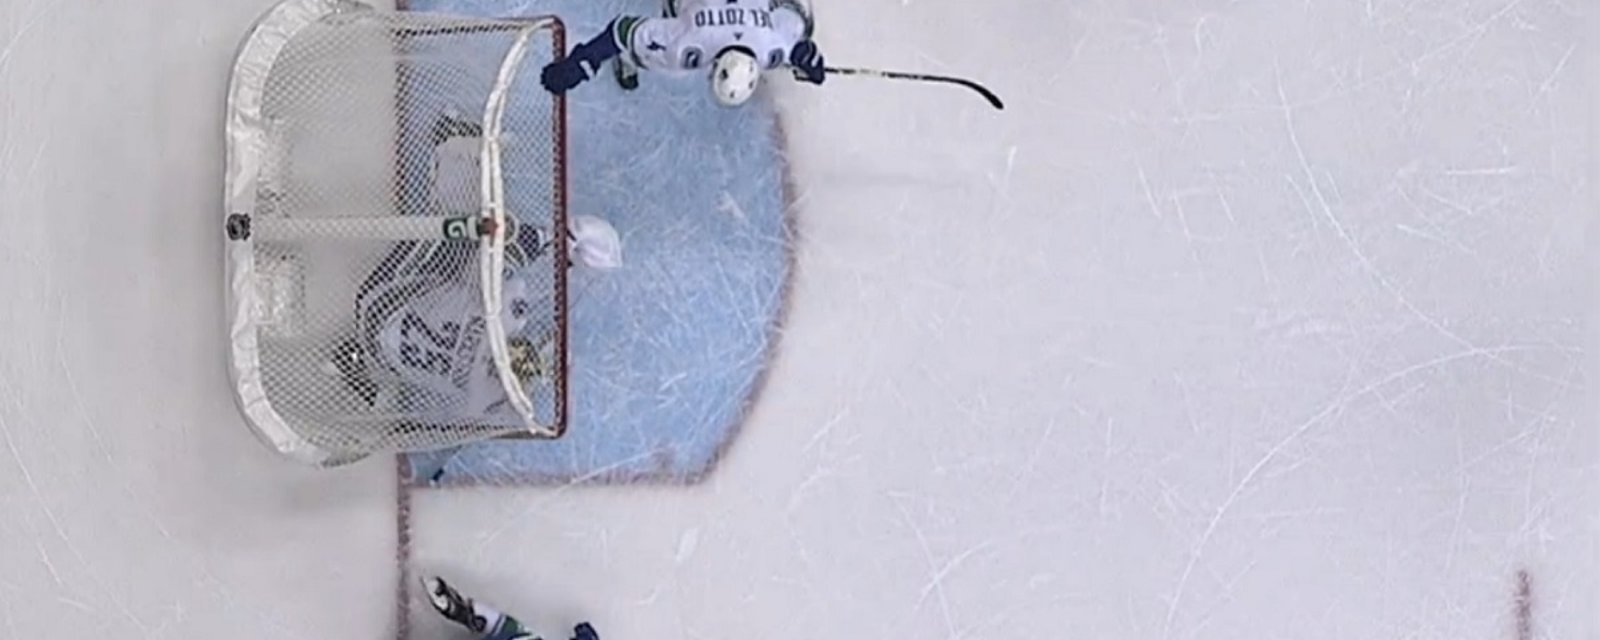 Net literally falls on the goalie, NHL officials still rule a good goal.